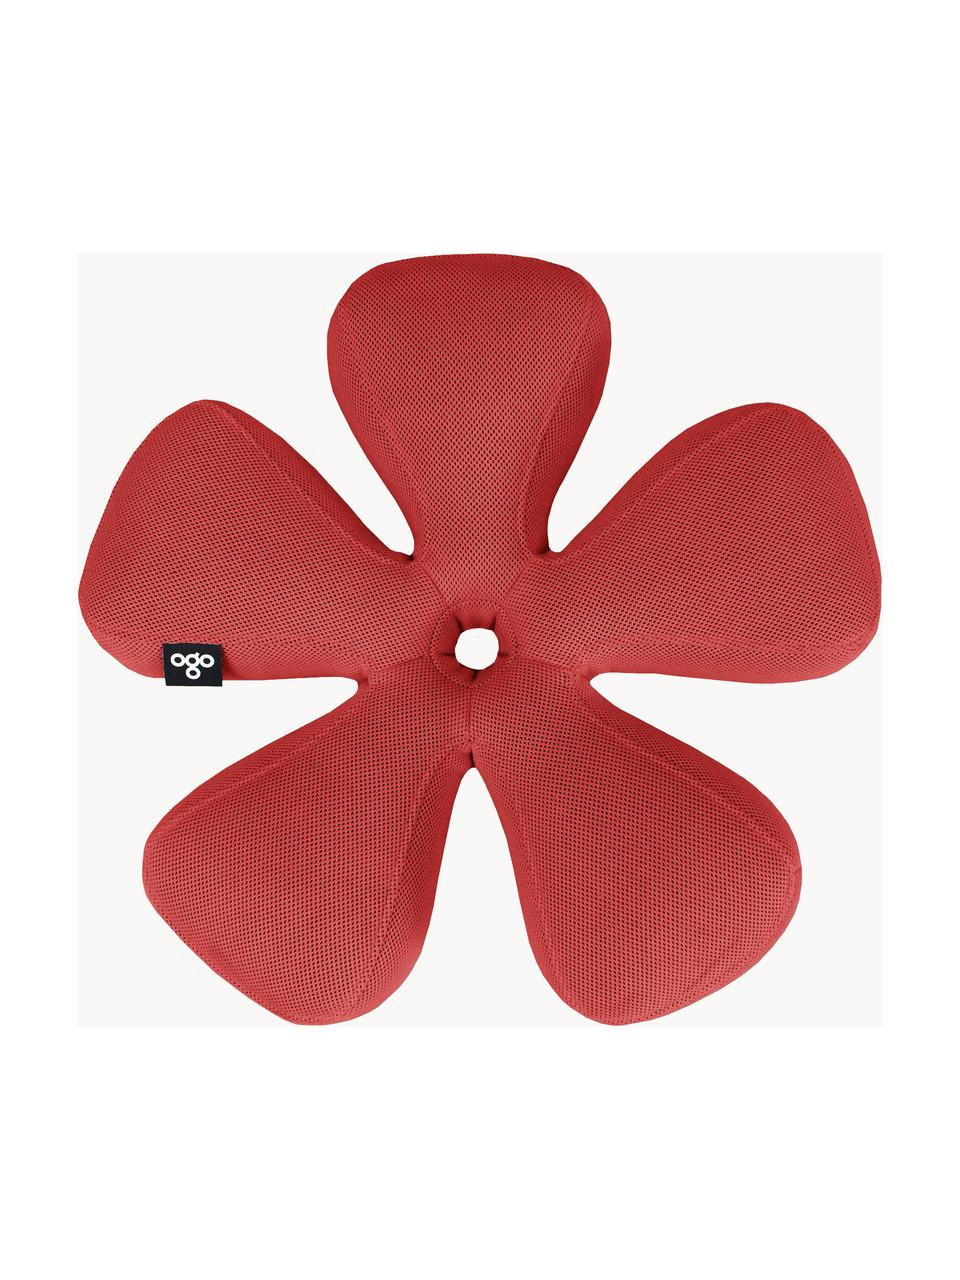 Ręcznie wykonany zewnętrzny worek do siedzenia Flower, Tapicerka: 70% PAN + 30% PES, wodood, Koralowy, Ø 72 x W 17 cm